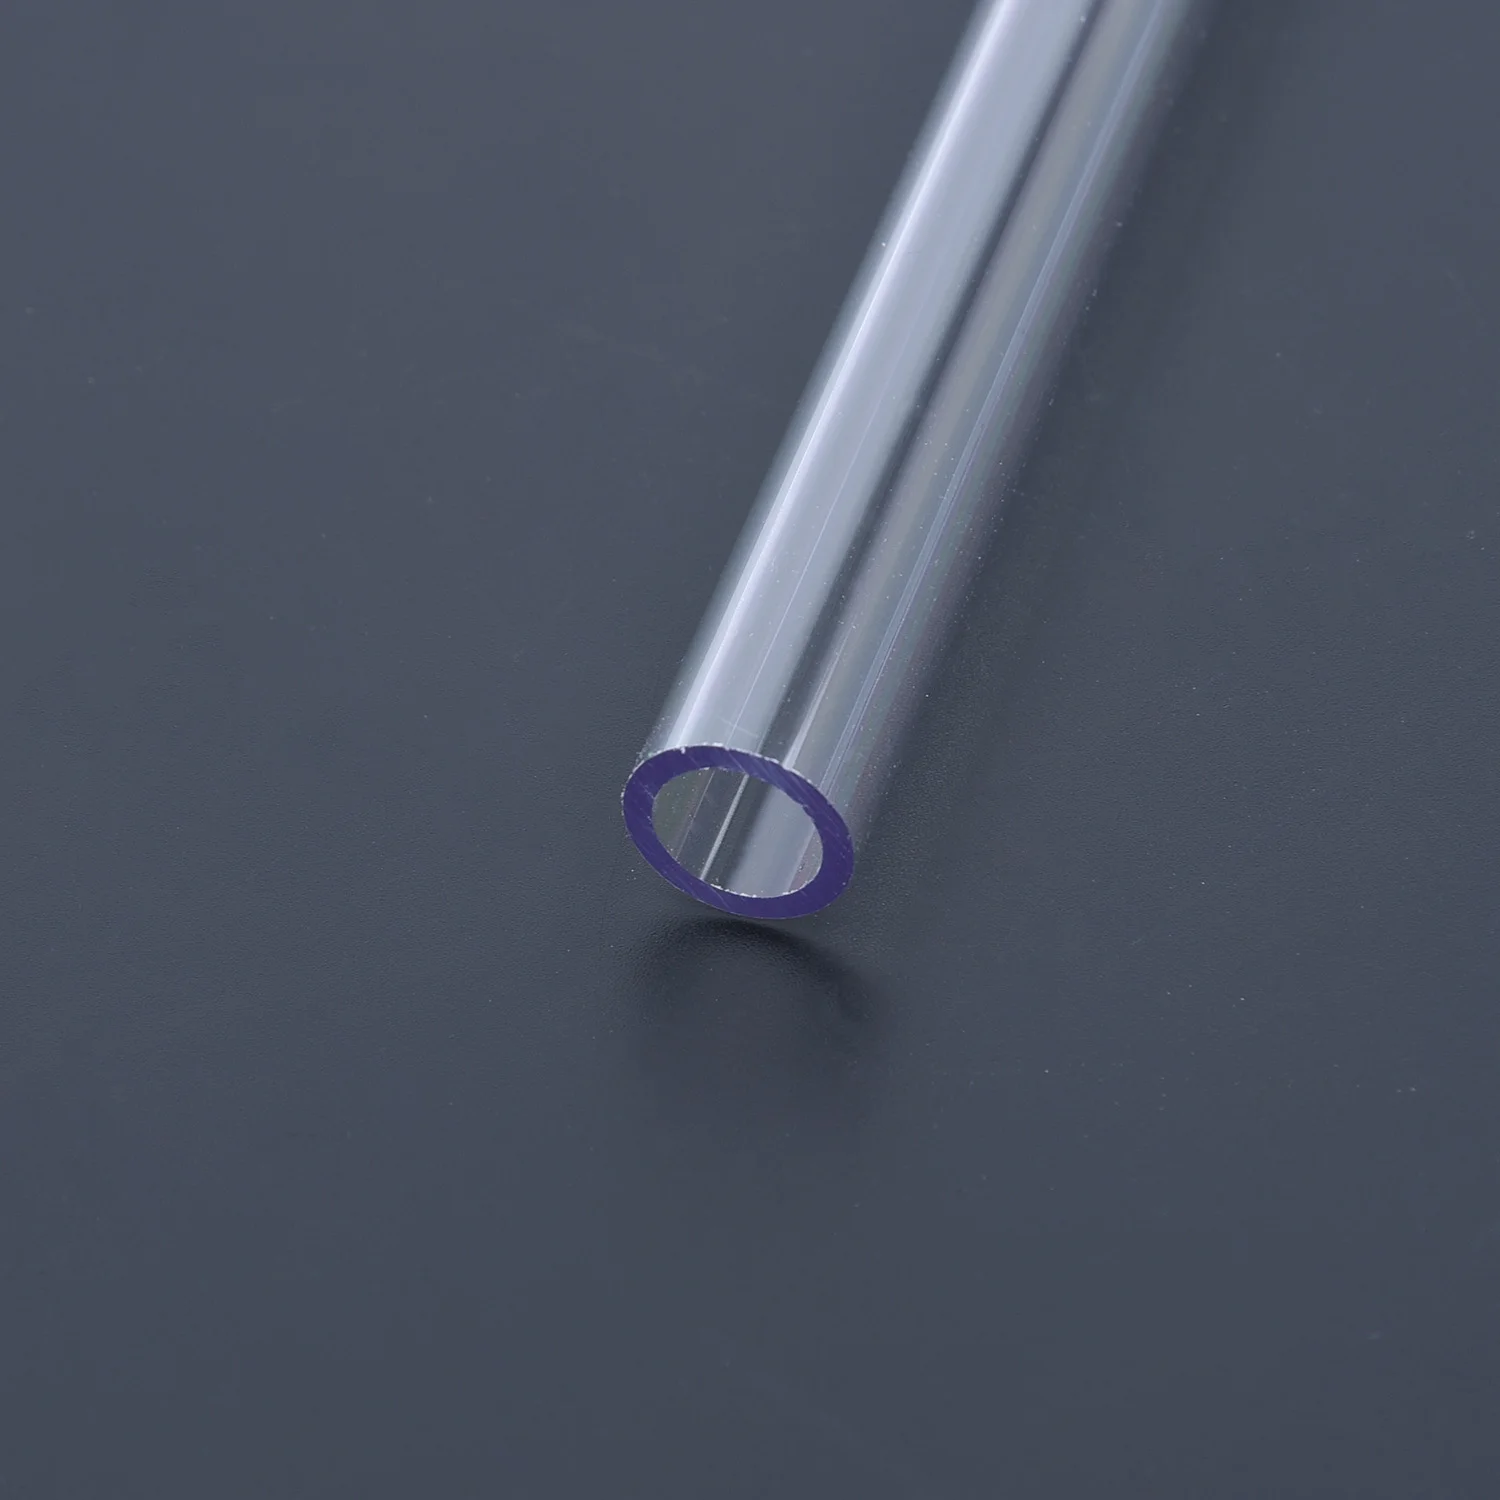 4 шт. 50 см прозрачная трубка PETG неподвижно закрепленная жесткая трубка 10 мм/14 мм прозрачные изгибающие жесткие трубы шланг для компьютера система водяного охлаждения